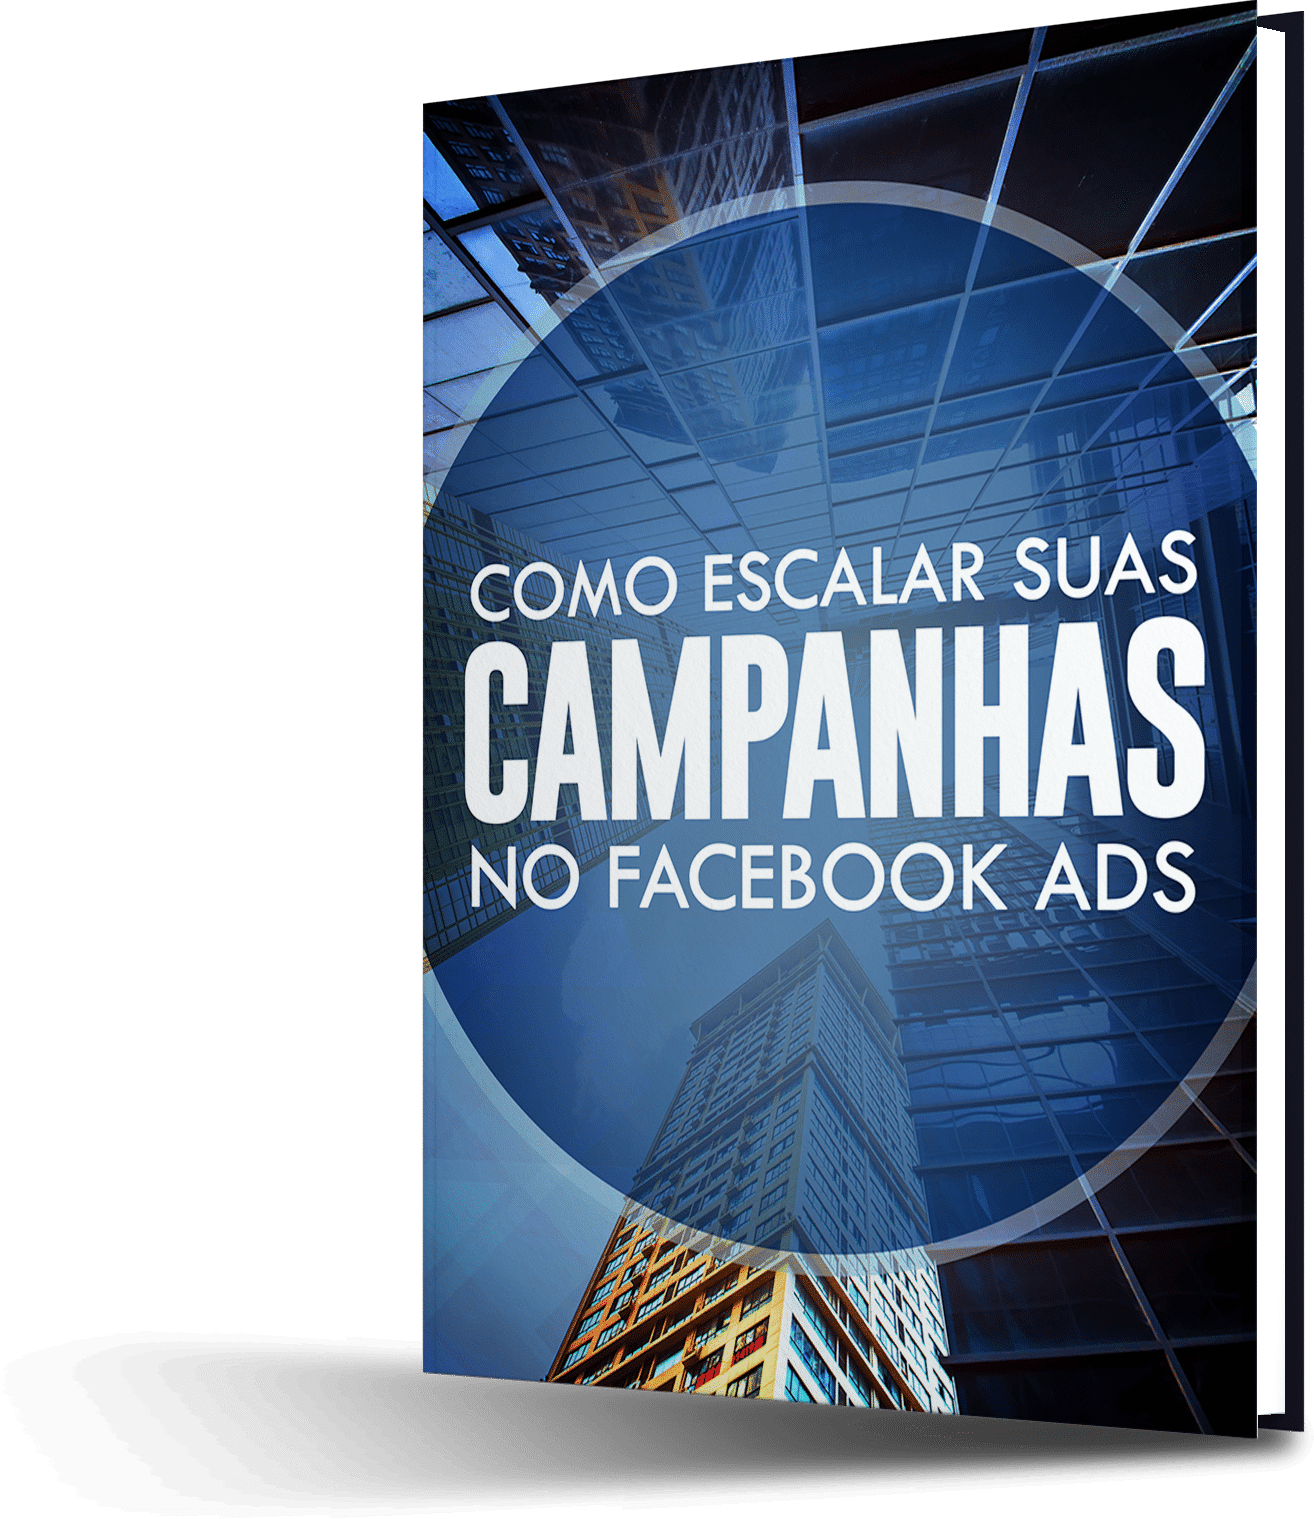 e book escalar campanhas4 - Como Escalar Suas Campanhas no Facebook Ads